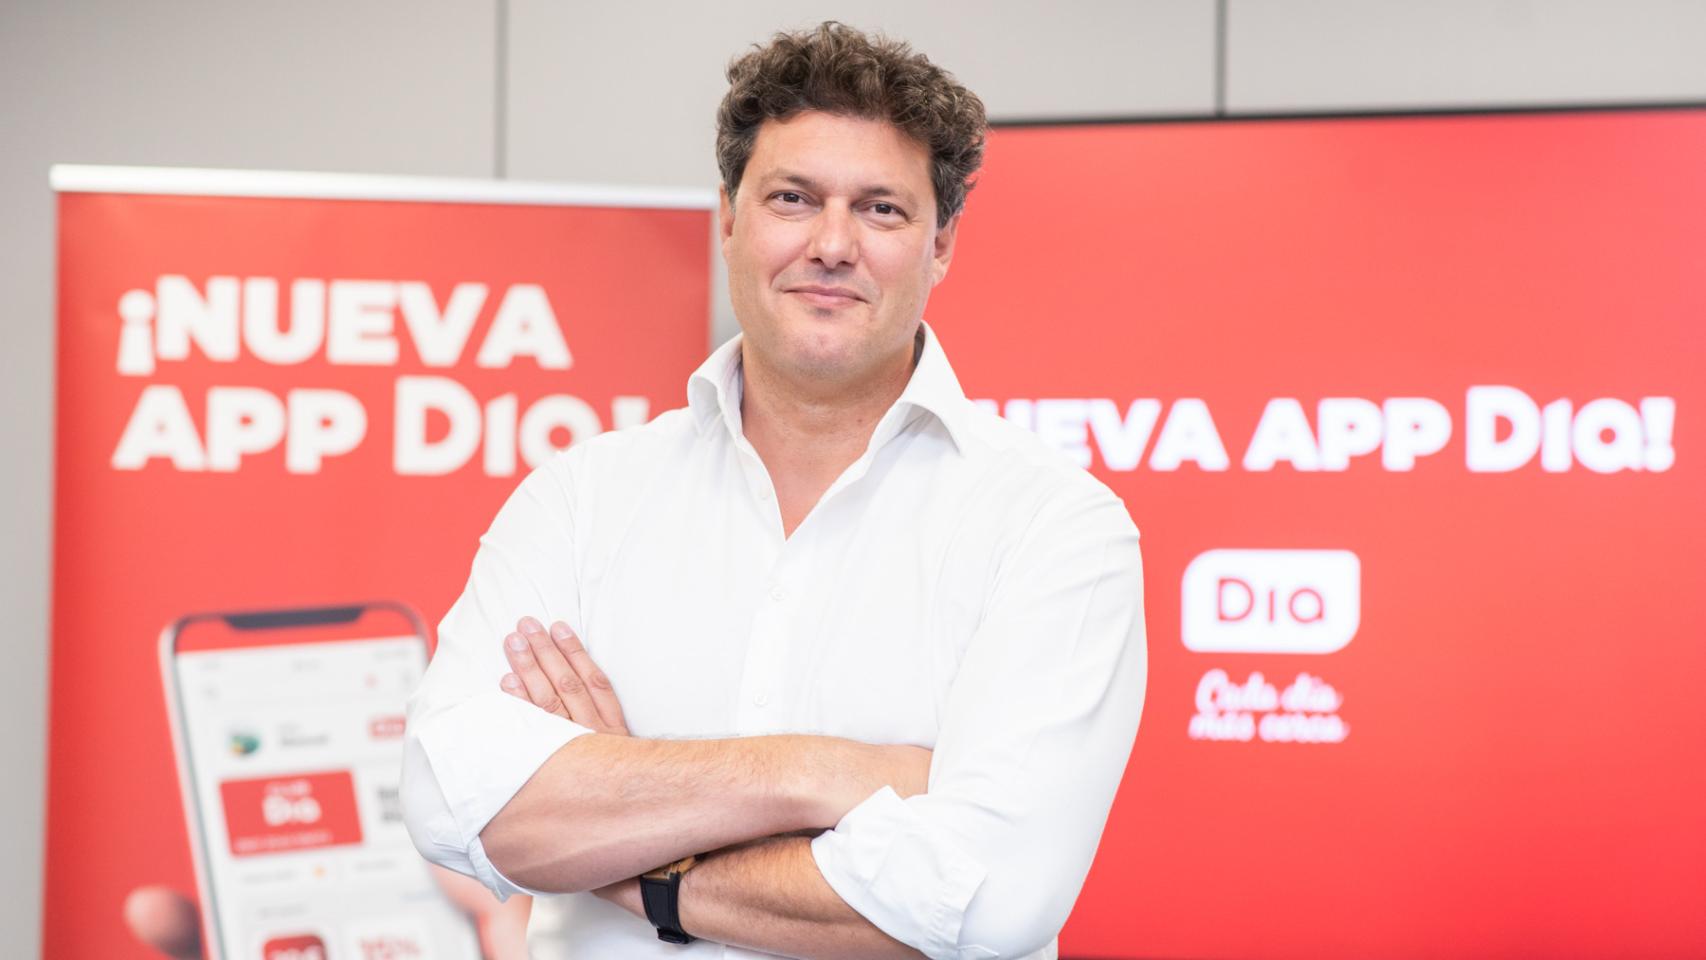 Ricardo Álvarez, CEO de Dia España.